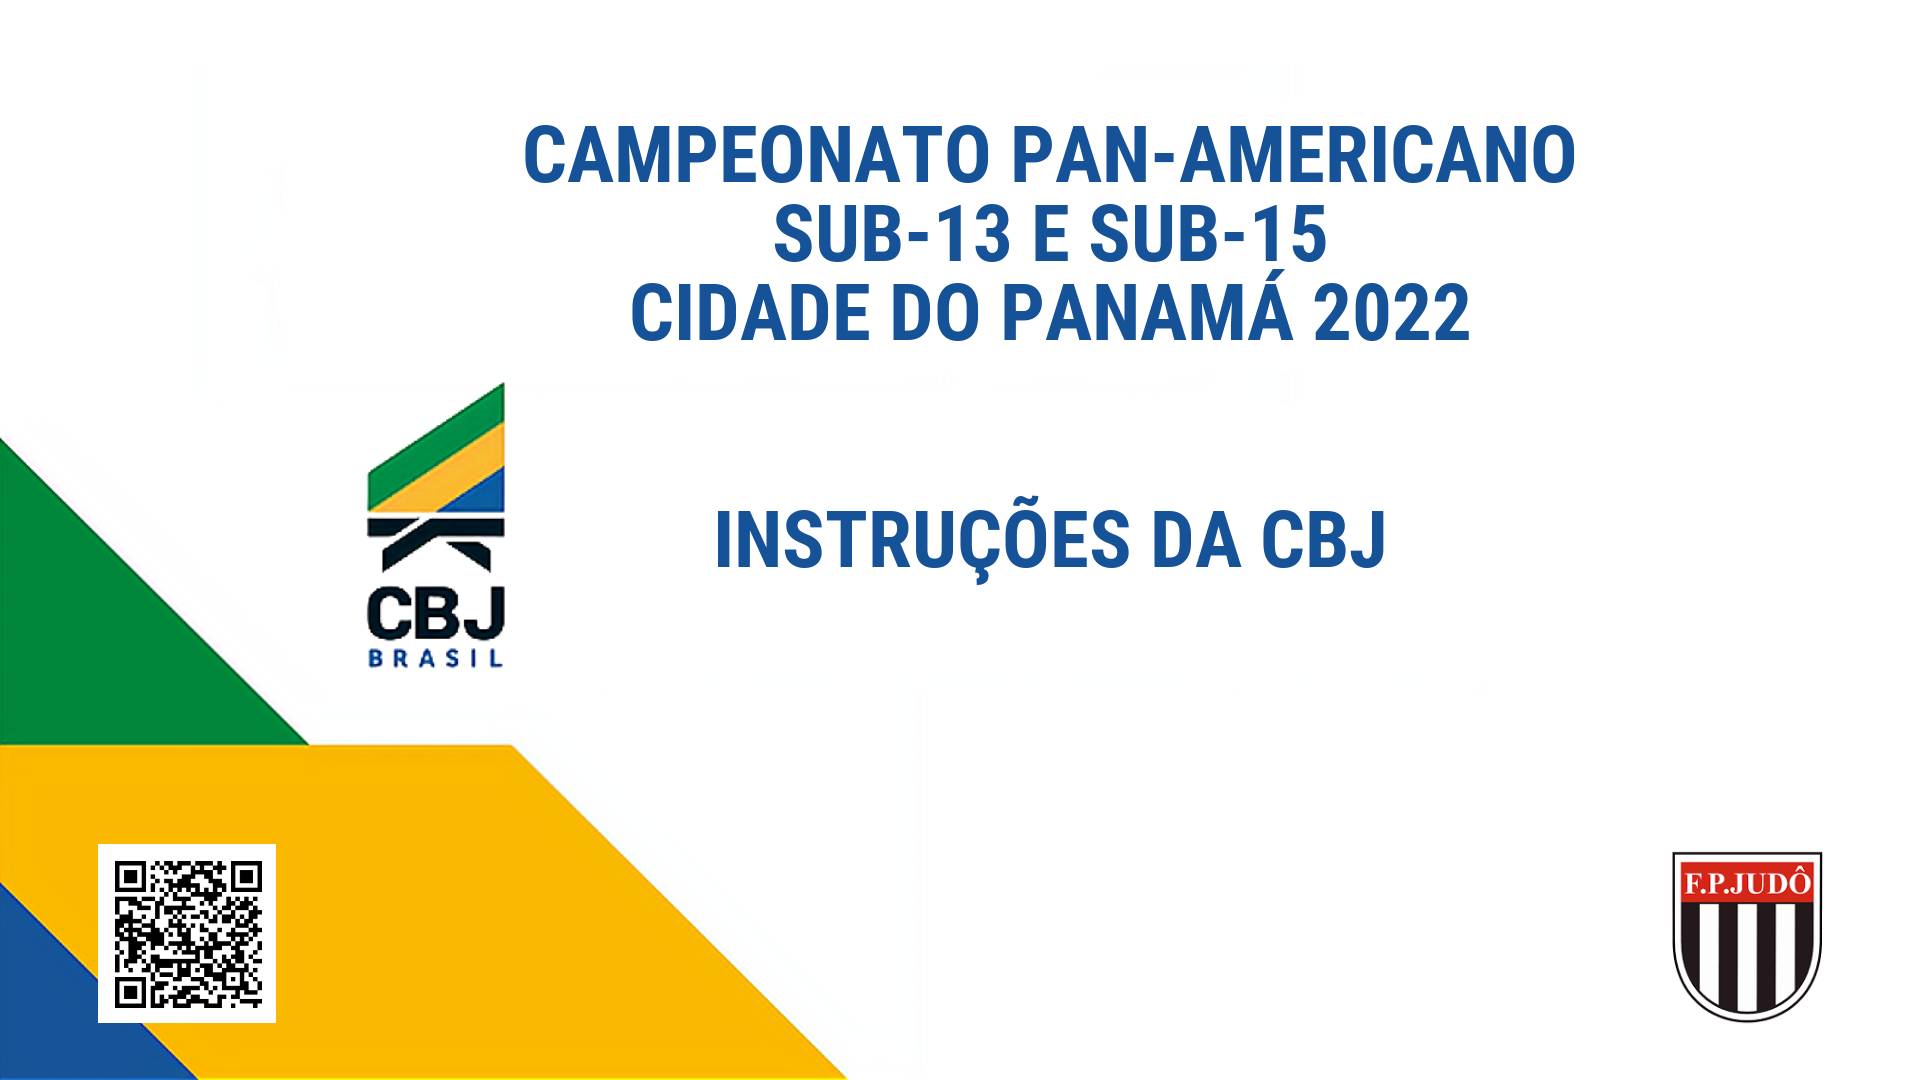 Panamericano Sub-13 e Sub-15